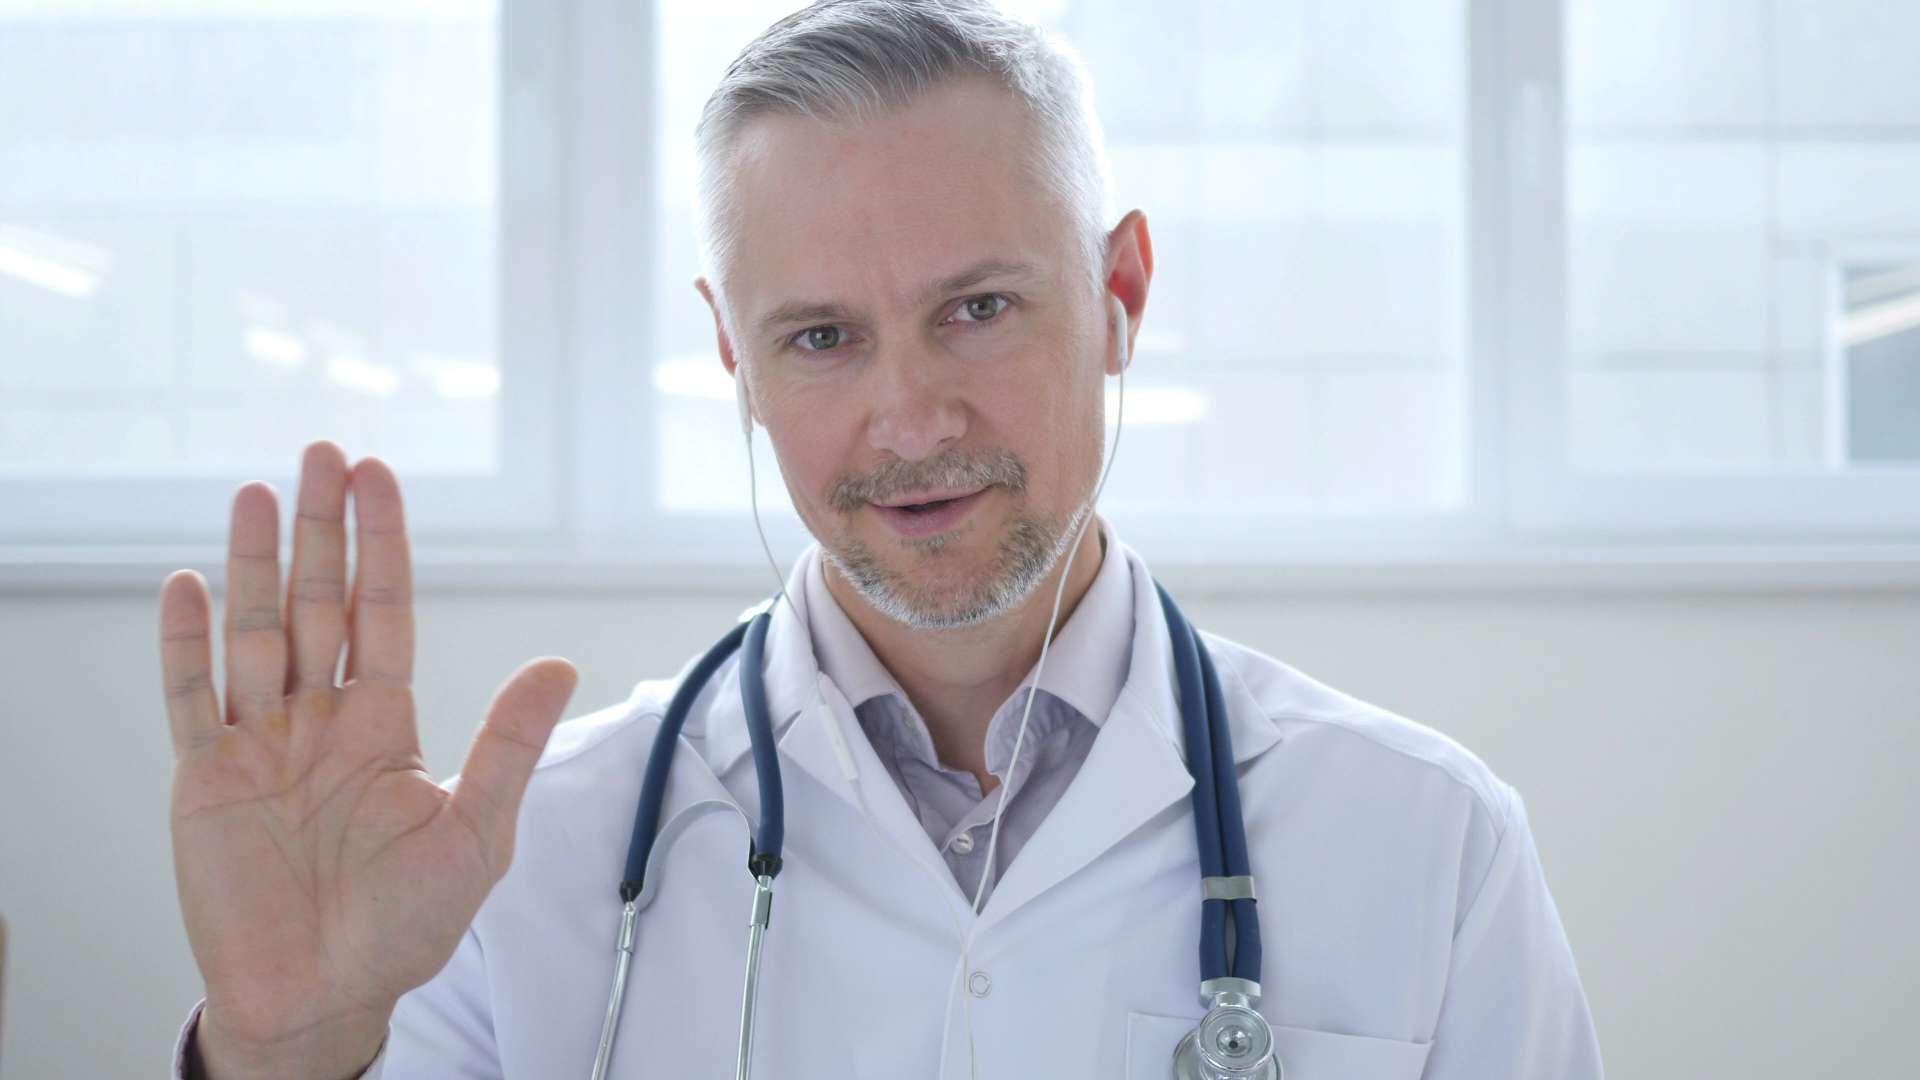 Video-Chat mit dem Patienten durch den Arzt